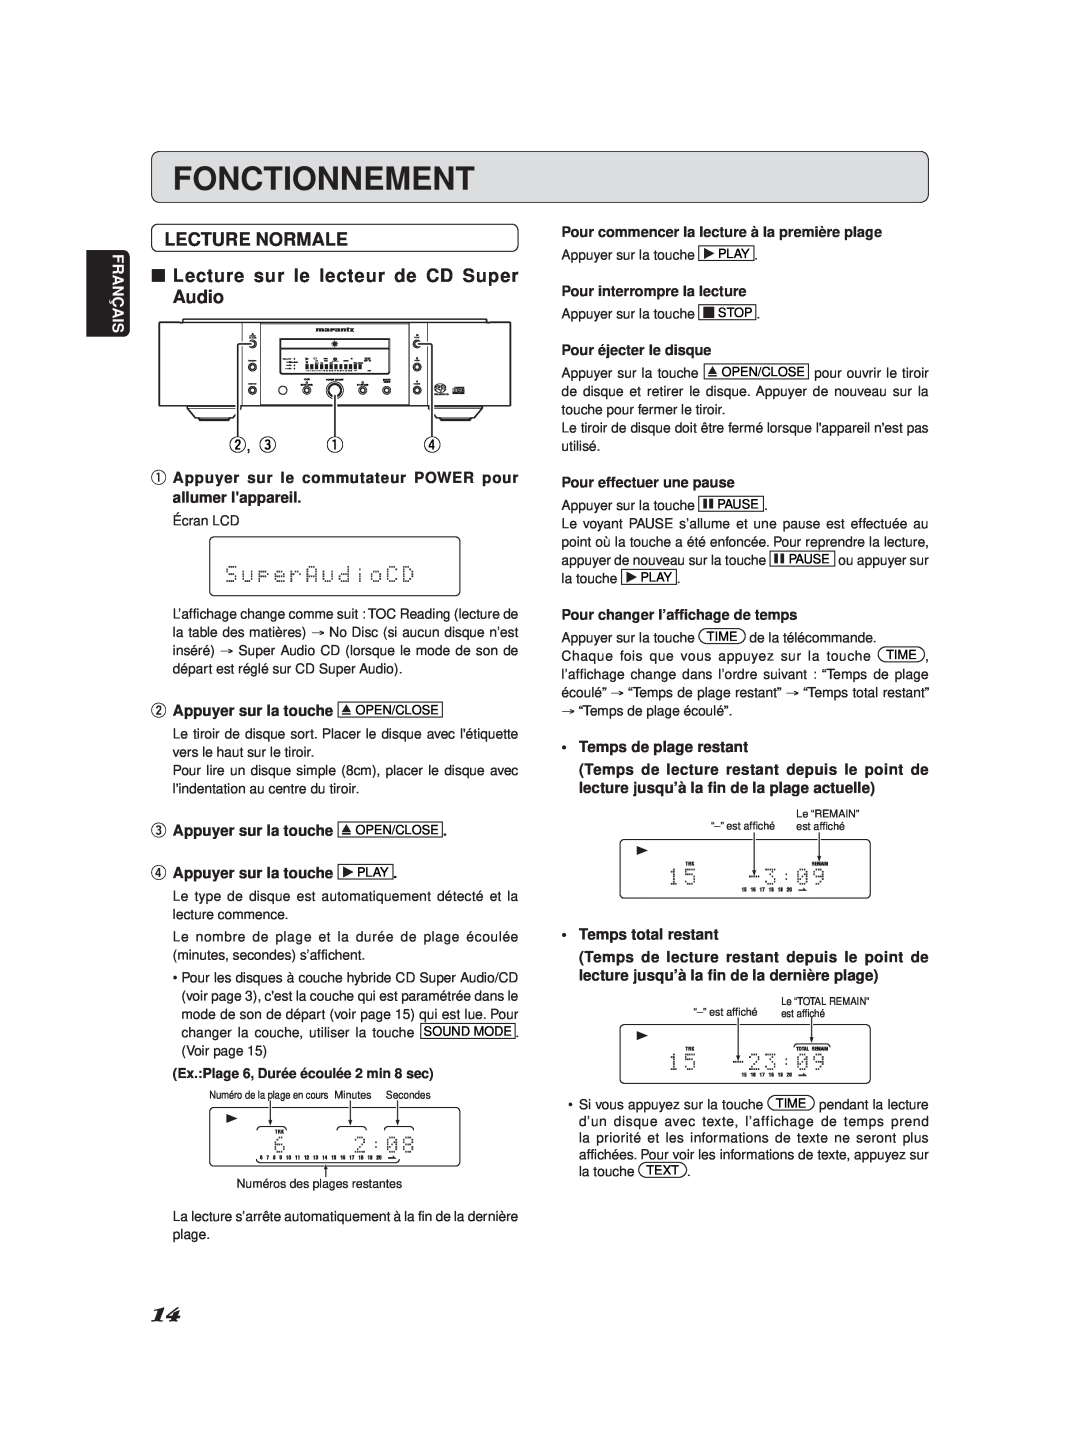 Marantz SA-11S2 manual Fonctionnement, Lecture Normale, Lecture sur le lecteur de CD Super, Audio, w, e q r 